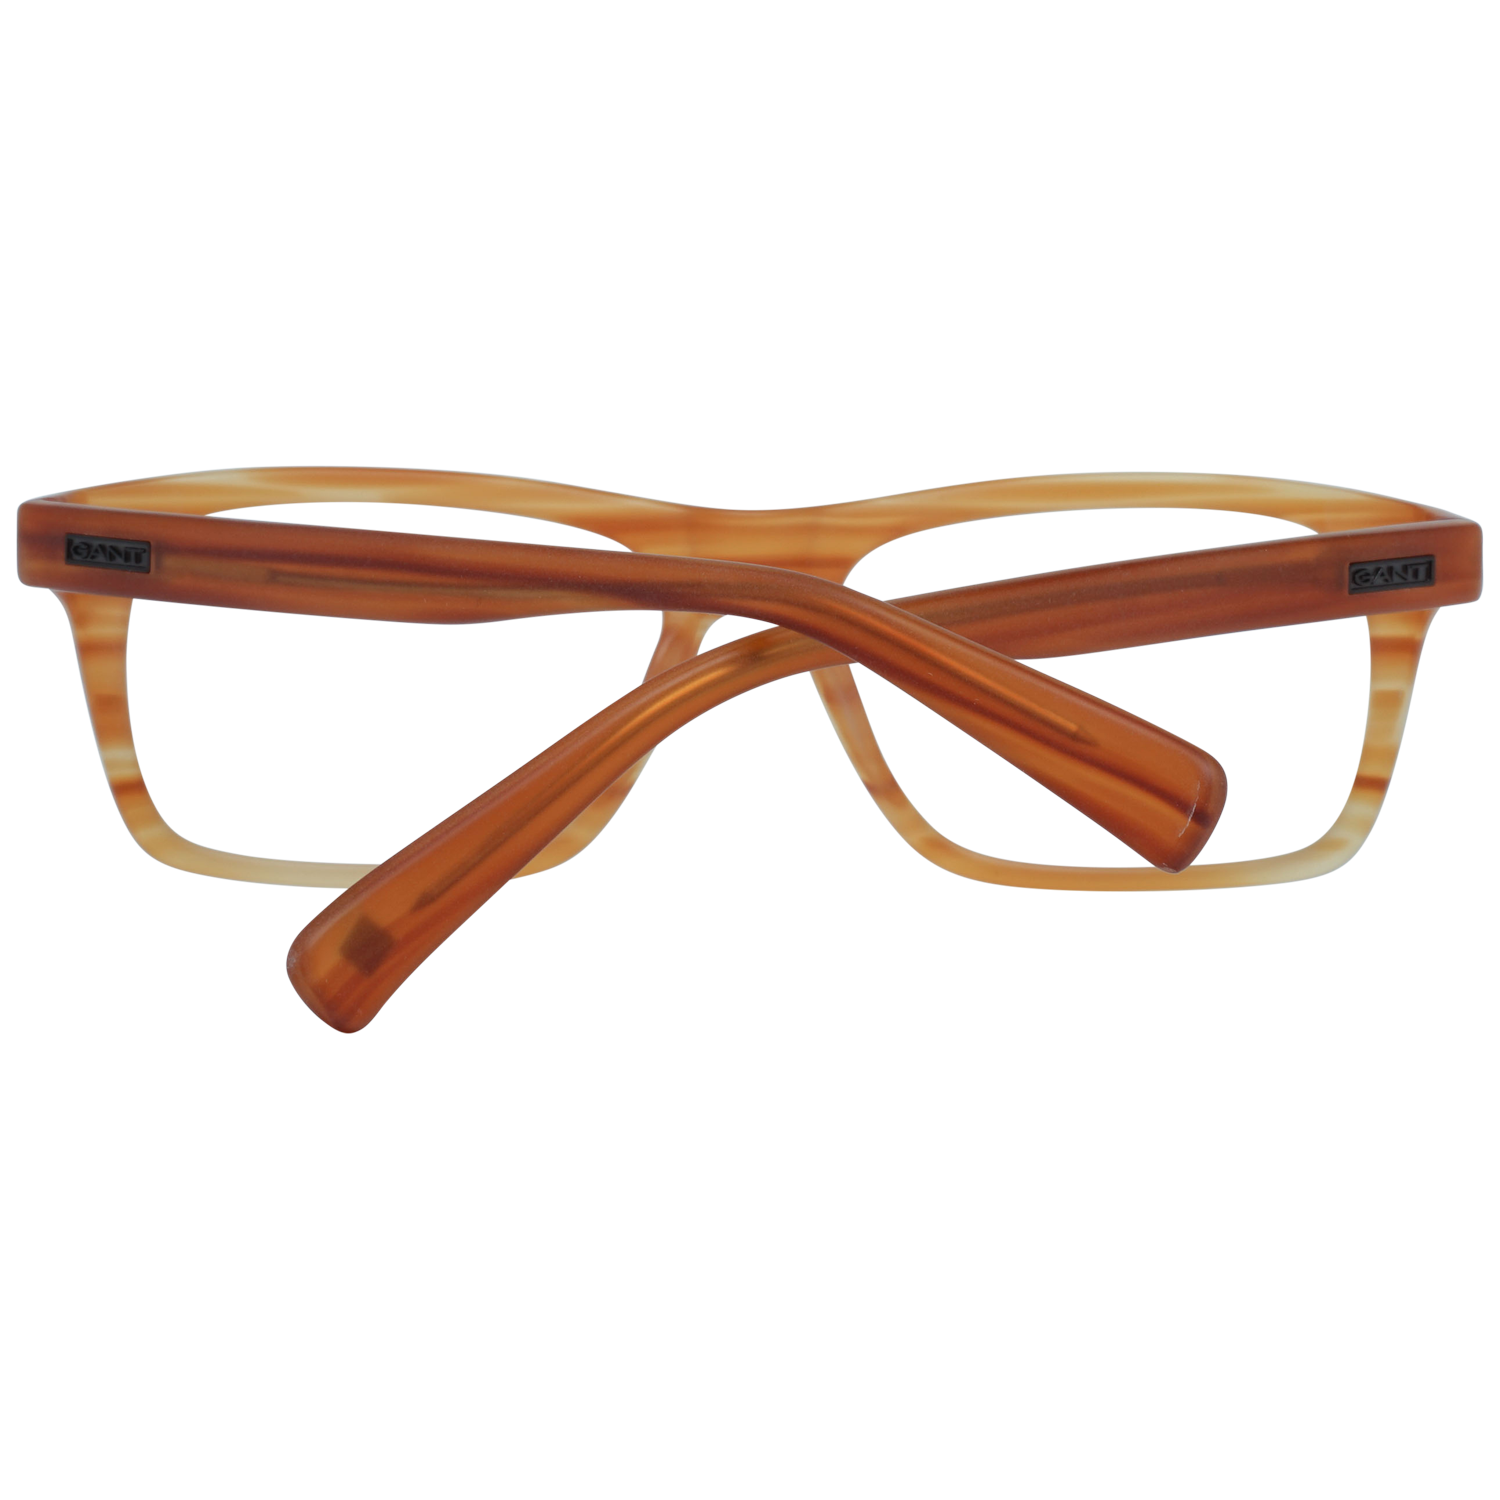 Gant Frames Gant Glasses Frames GR Leffert MAMB 52 Eyeglasses Eyewear UK USA Australia 